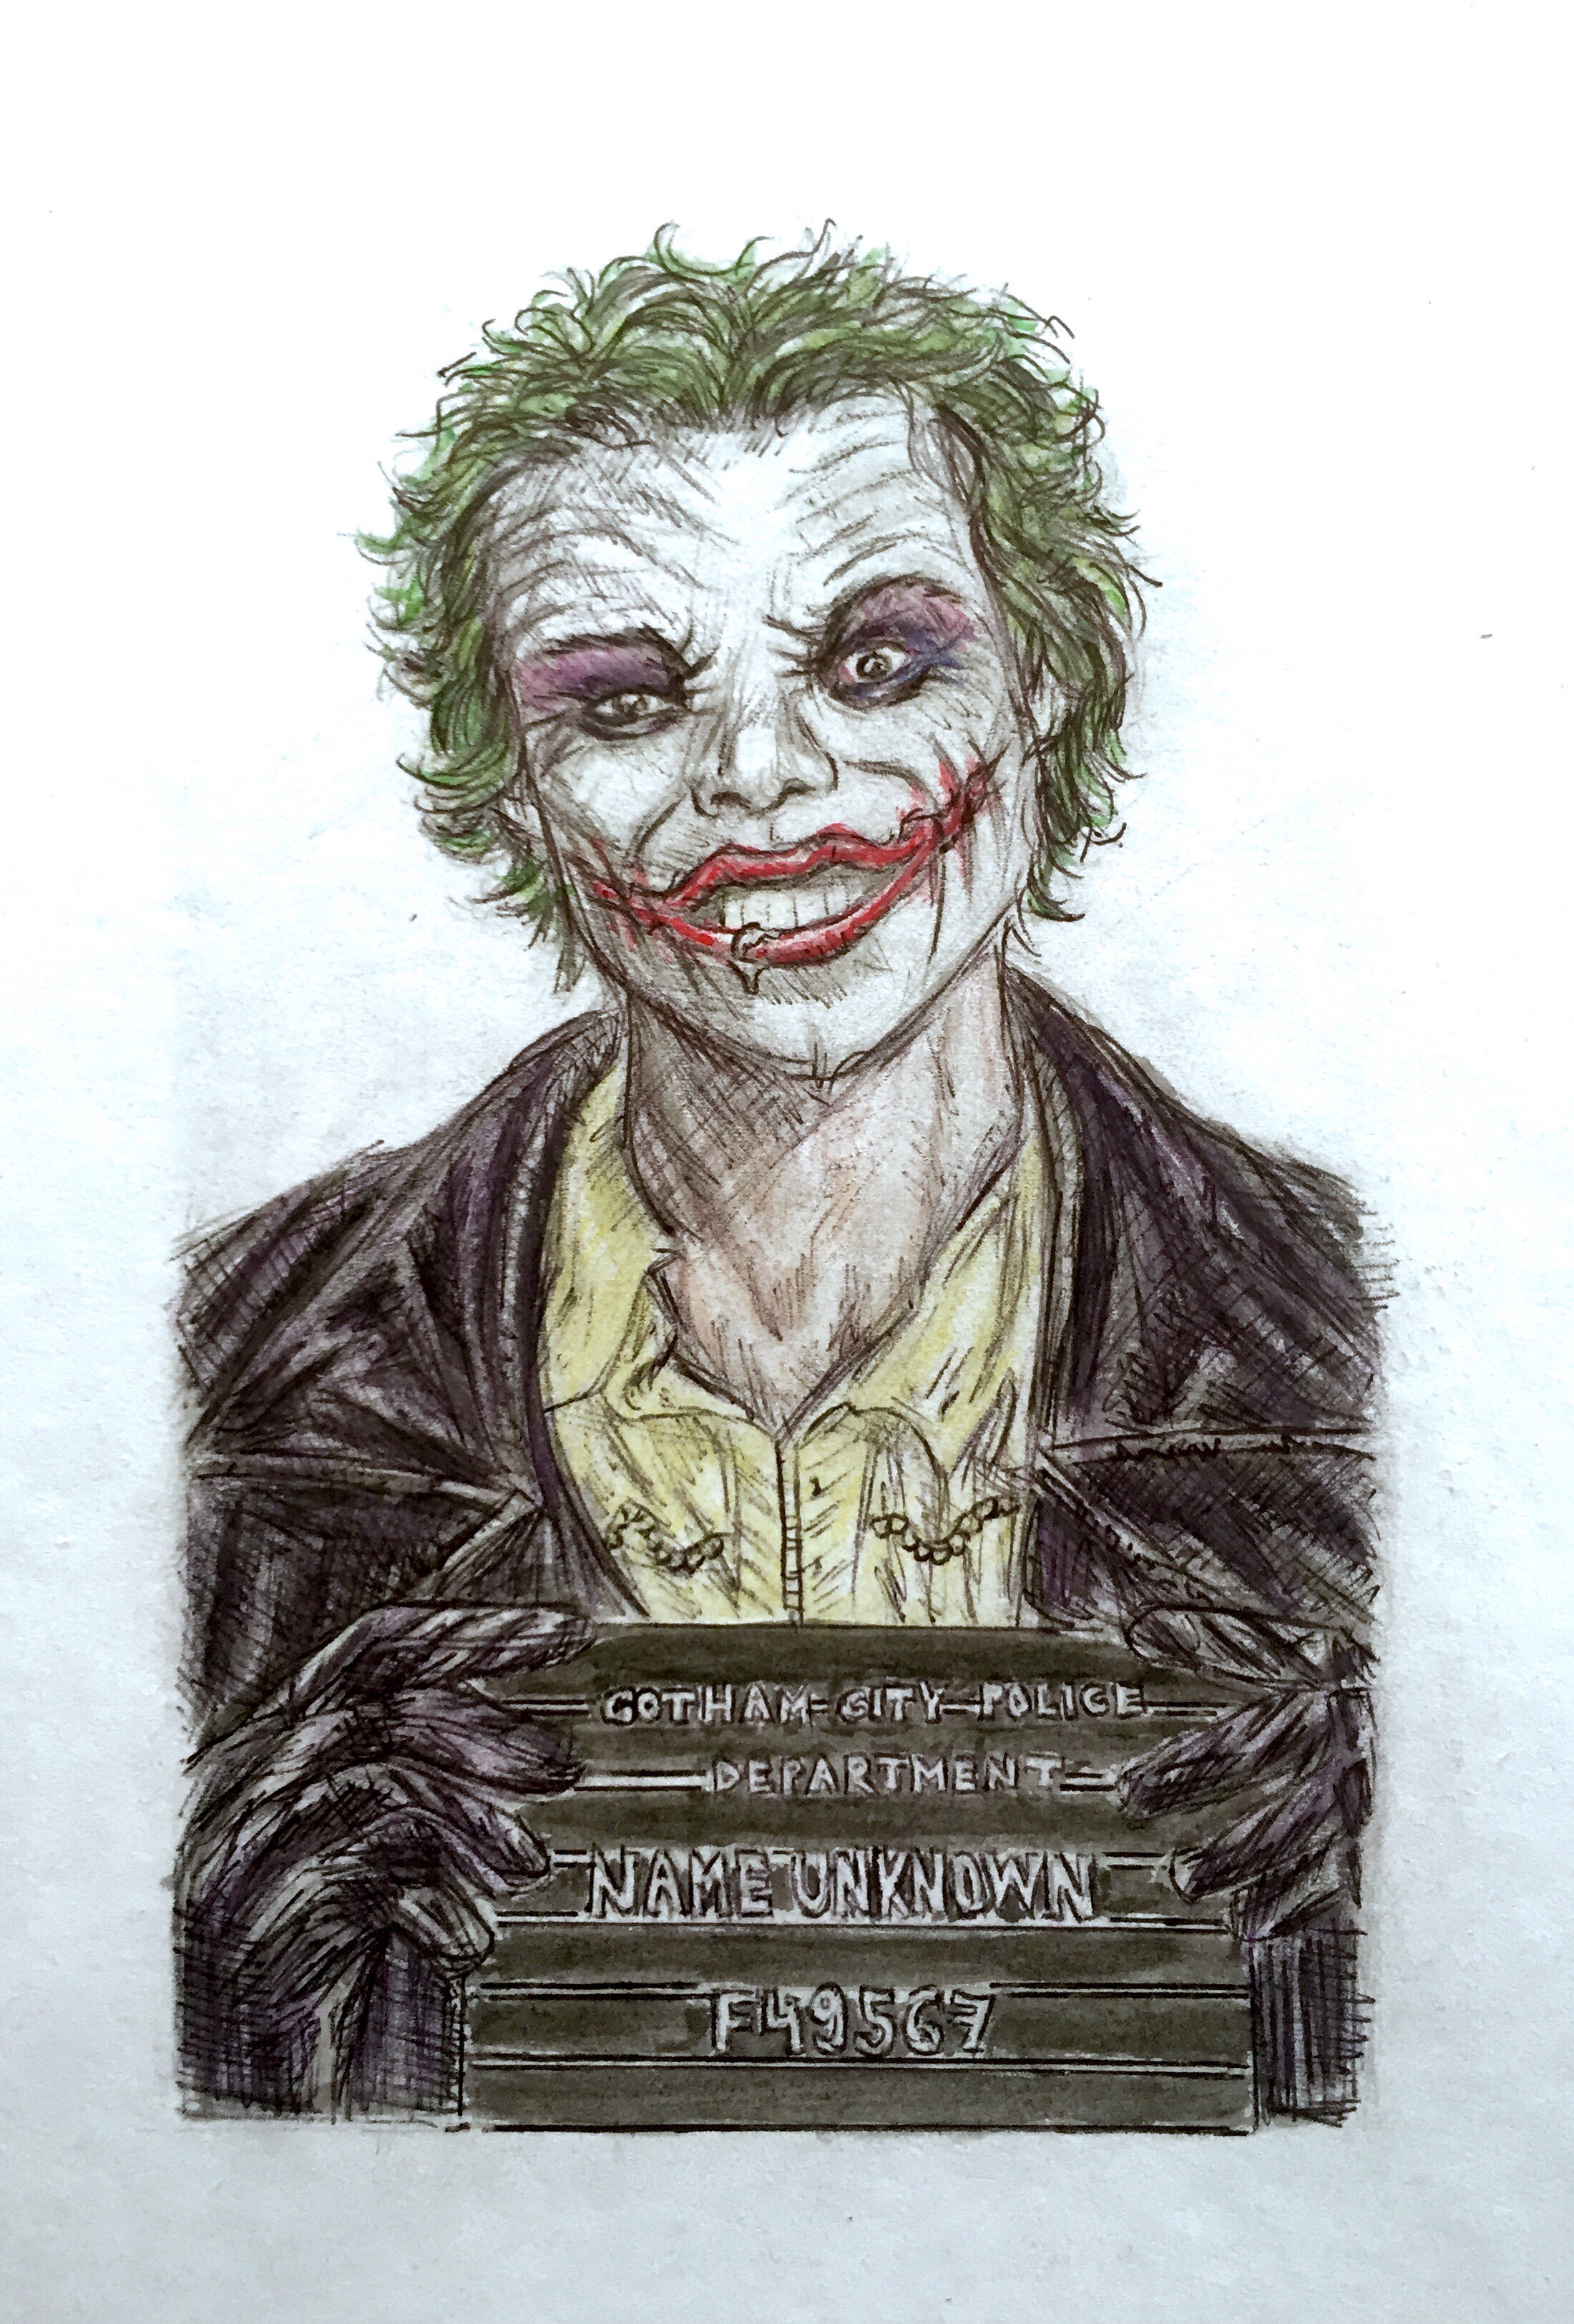 Joker (Lee Bermejo style cover) by BatmanStalker21 on DeviantArt